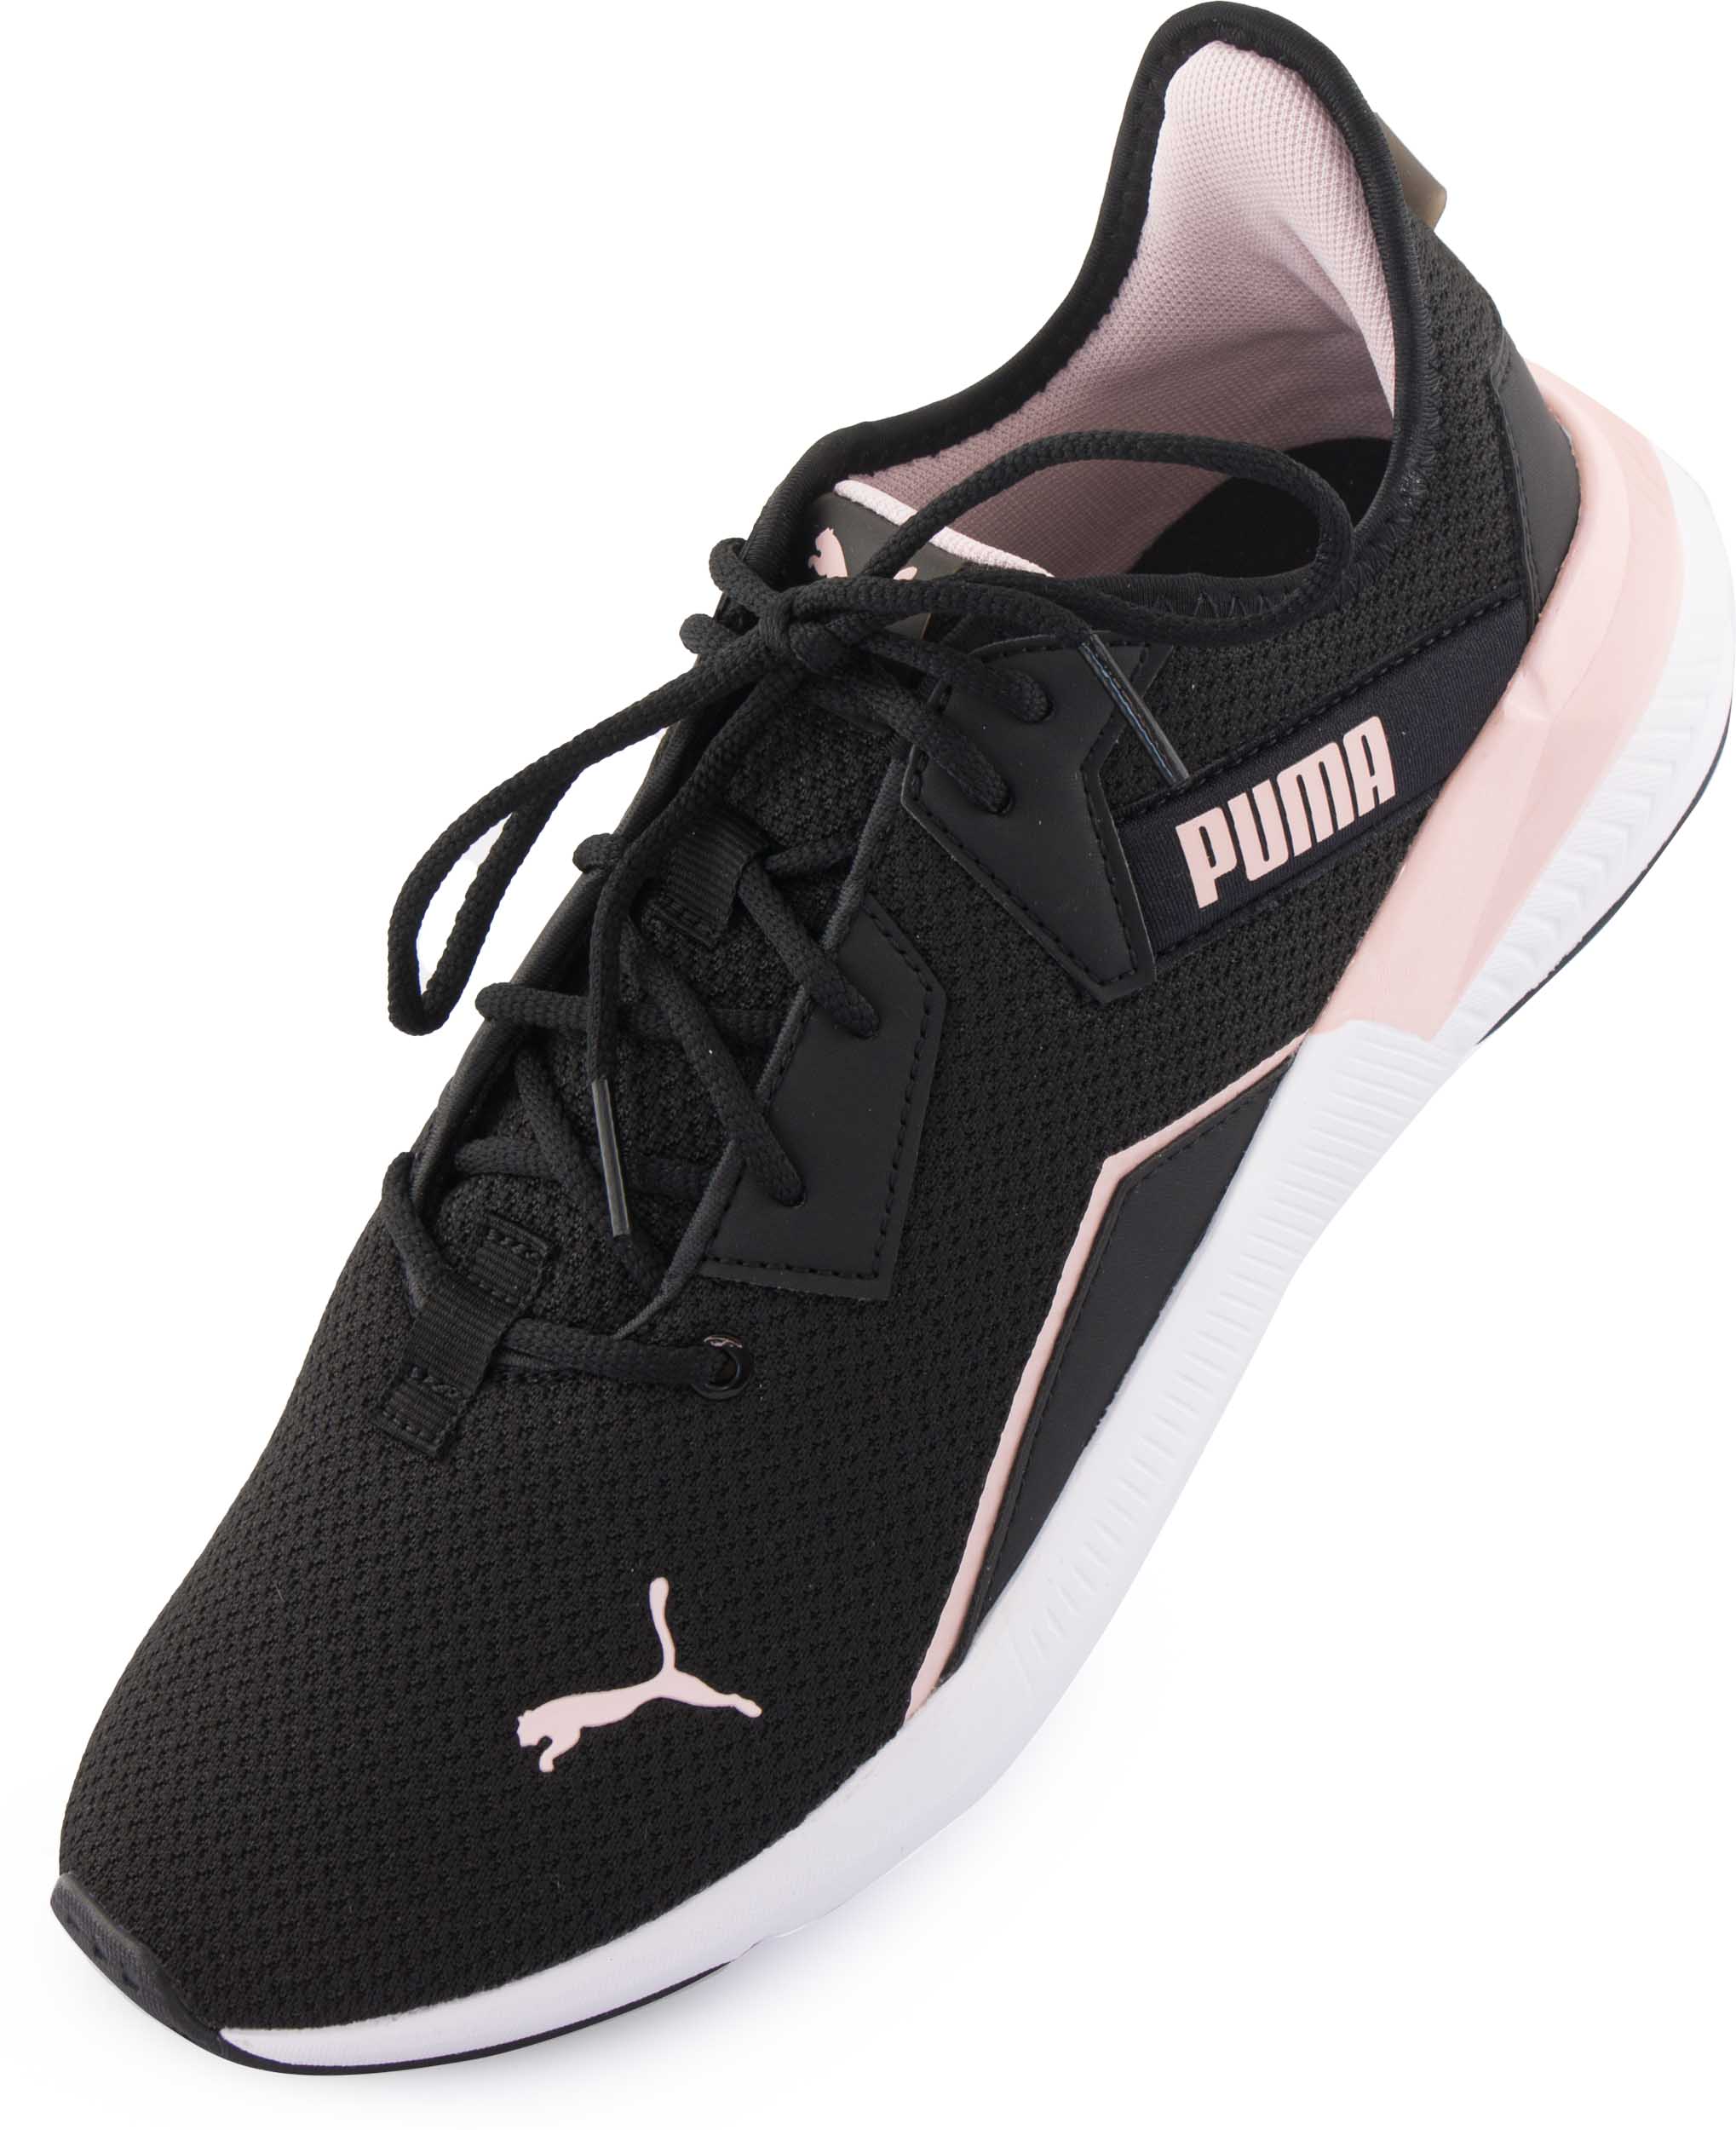 Dámské sportovní boty Puma Wms Platinum Shimmer Black Lotus|38,5